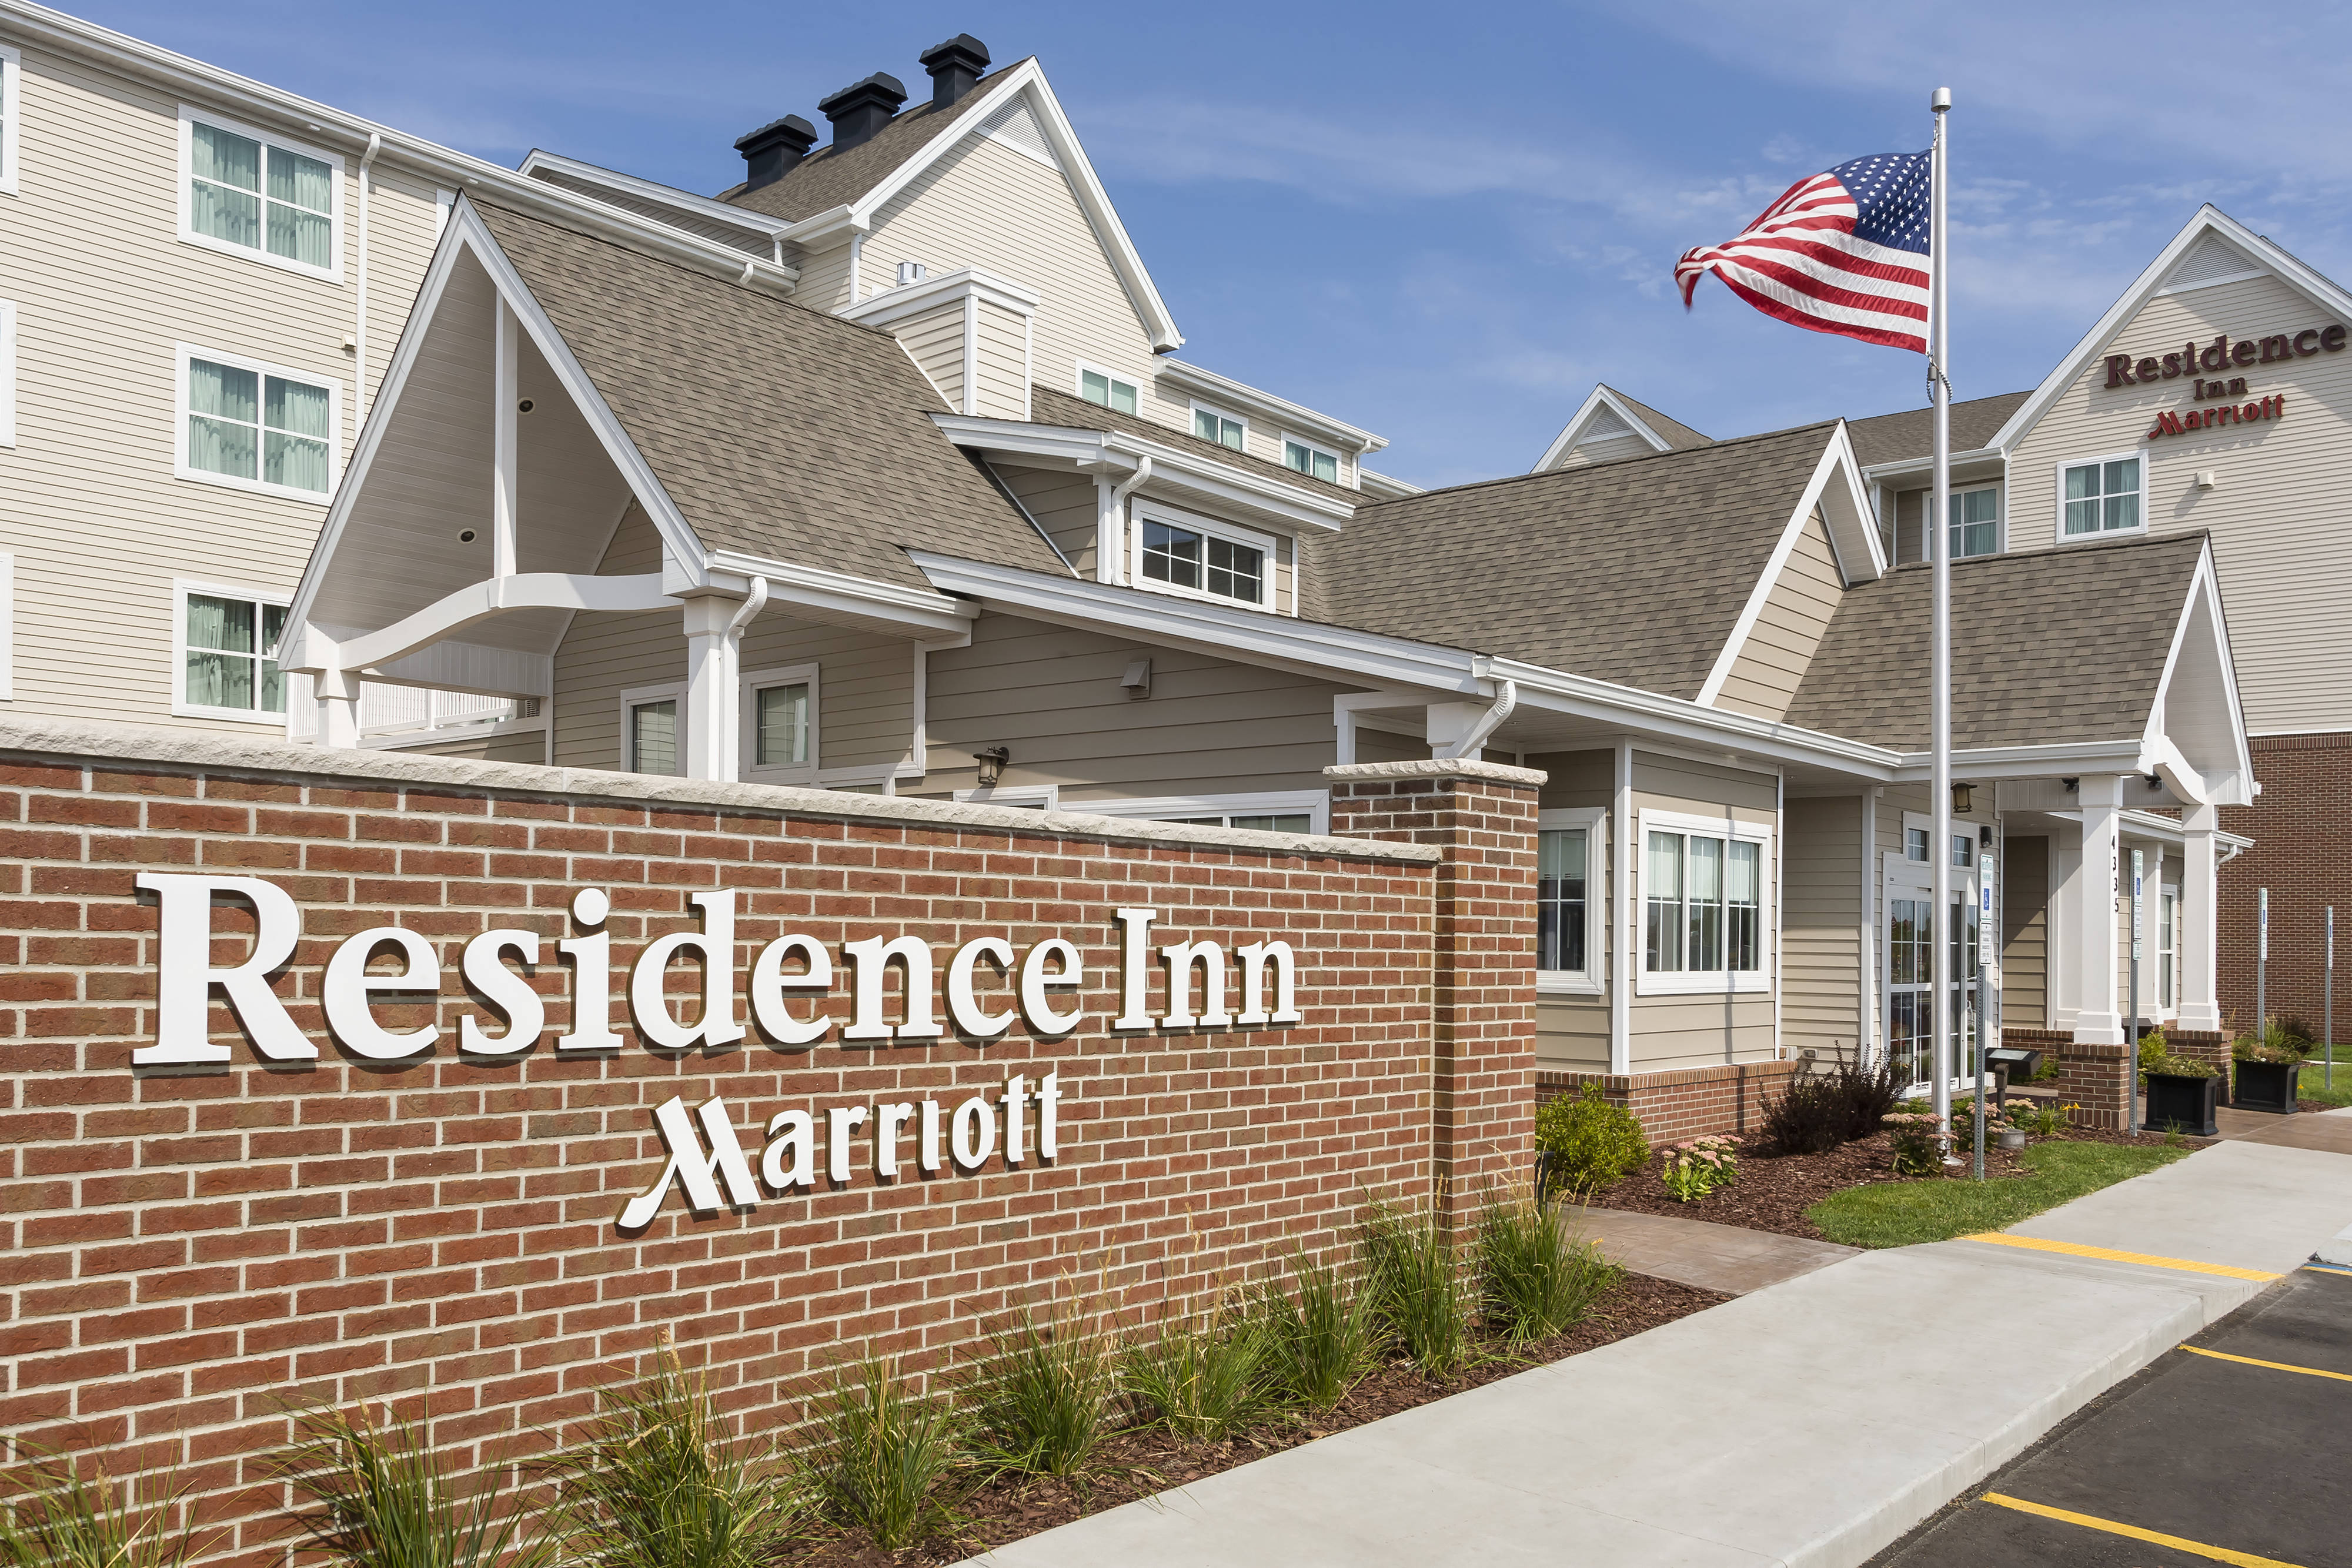 Photo of Residence Inn by Marriott Fargo, Fargo, ND